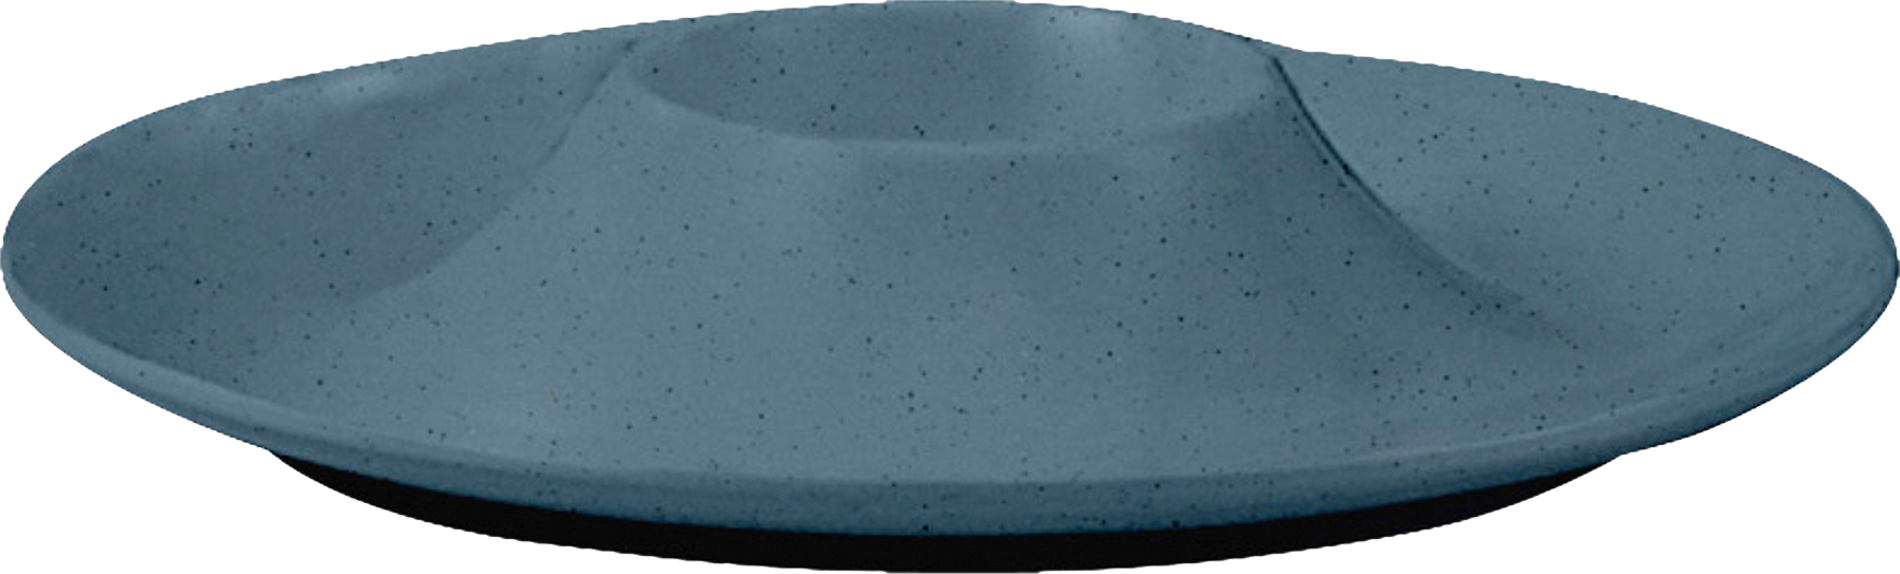 Brunner Eierbecher DOLOMIT   Eierbecher aus hochwertigem Melamin mit modernem Design und sanften Farben. Ø 13 cm Art Essgeschirr: Eierbecher